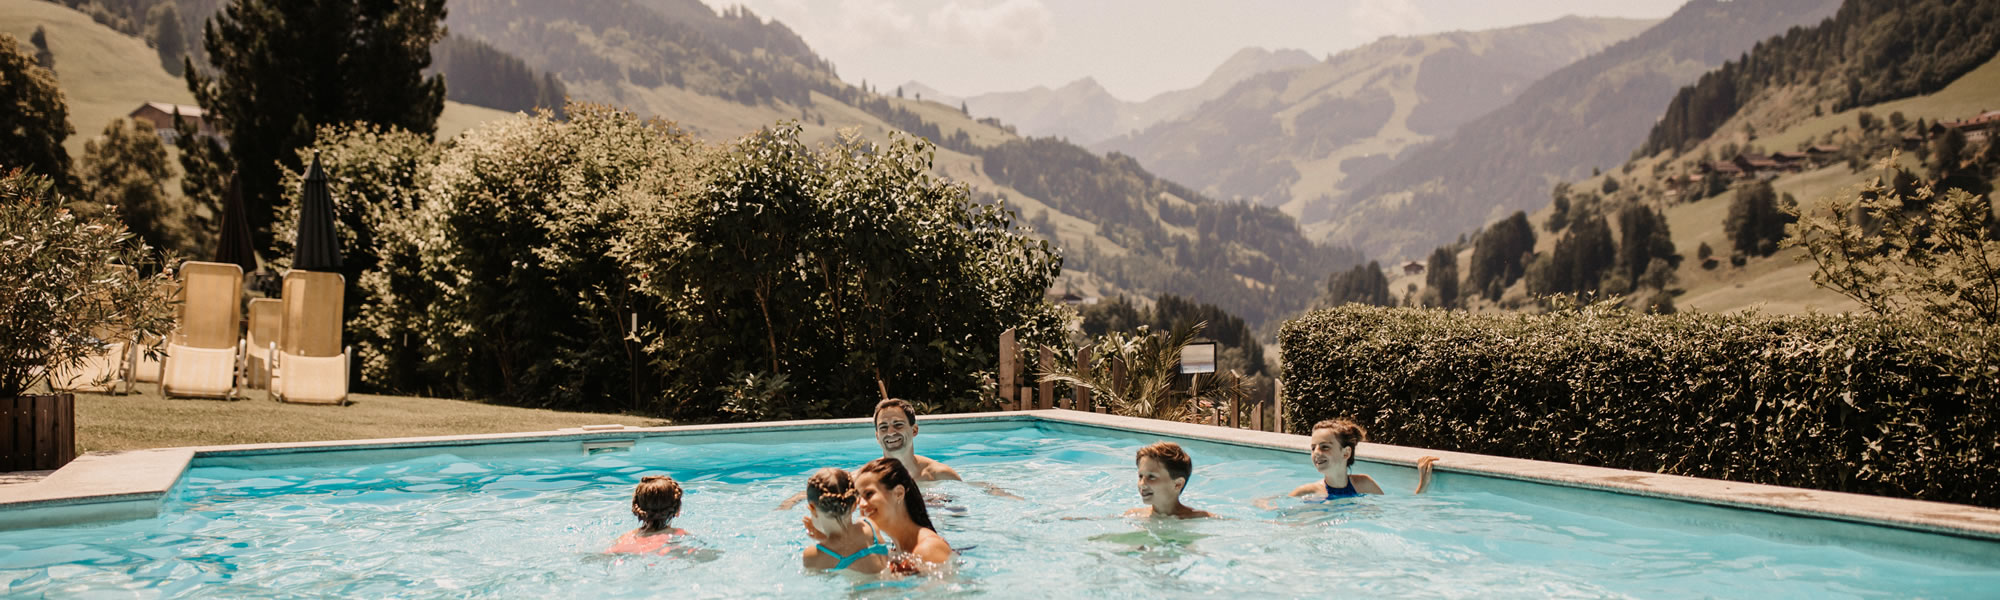 Familie im Pool mit Ausblick auf die Berge © Selina Flasch